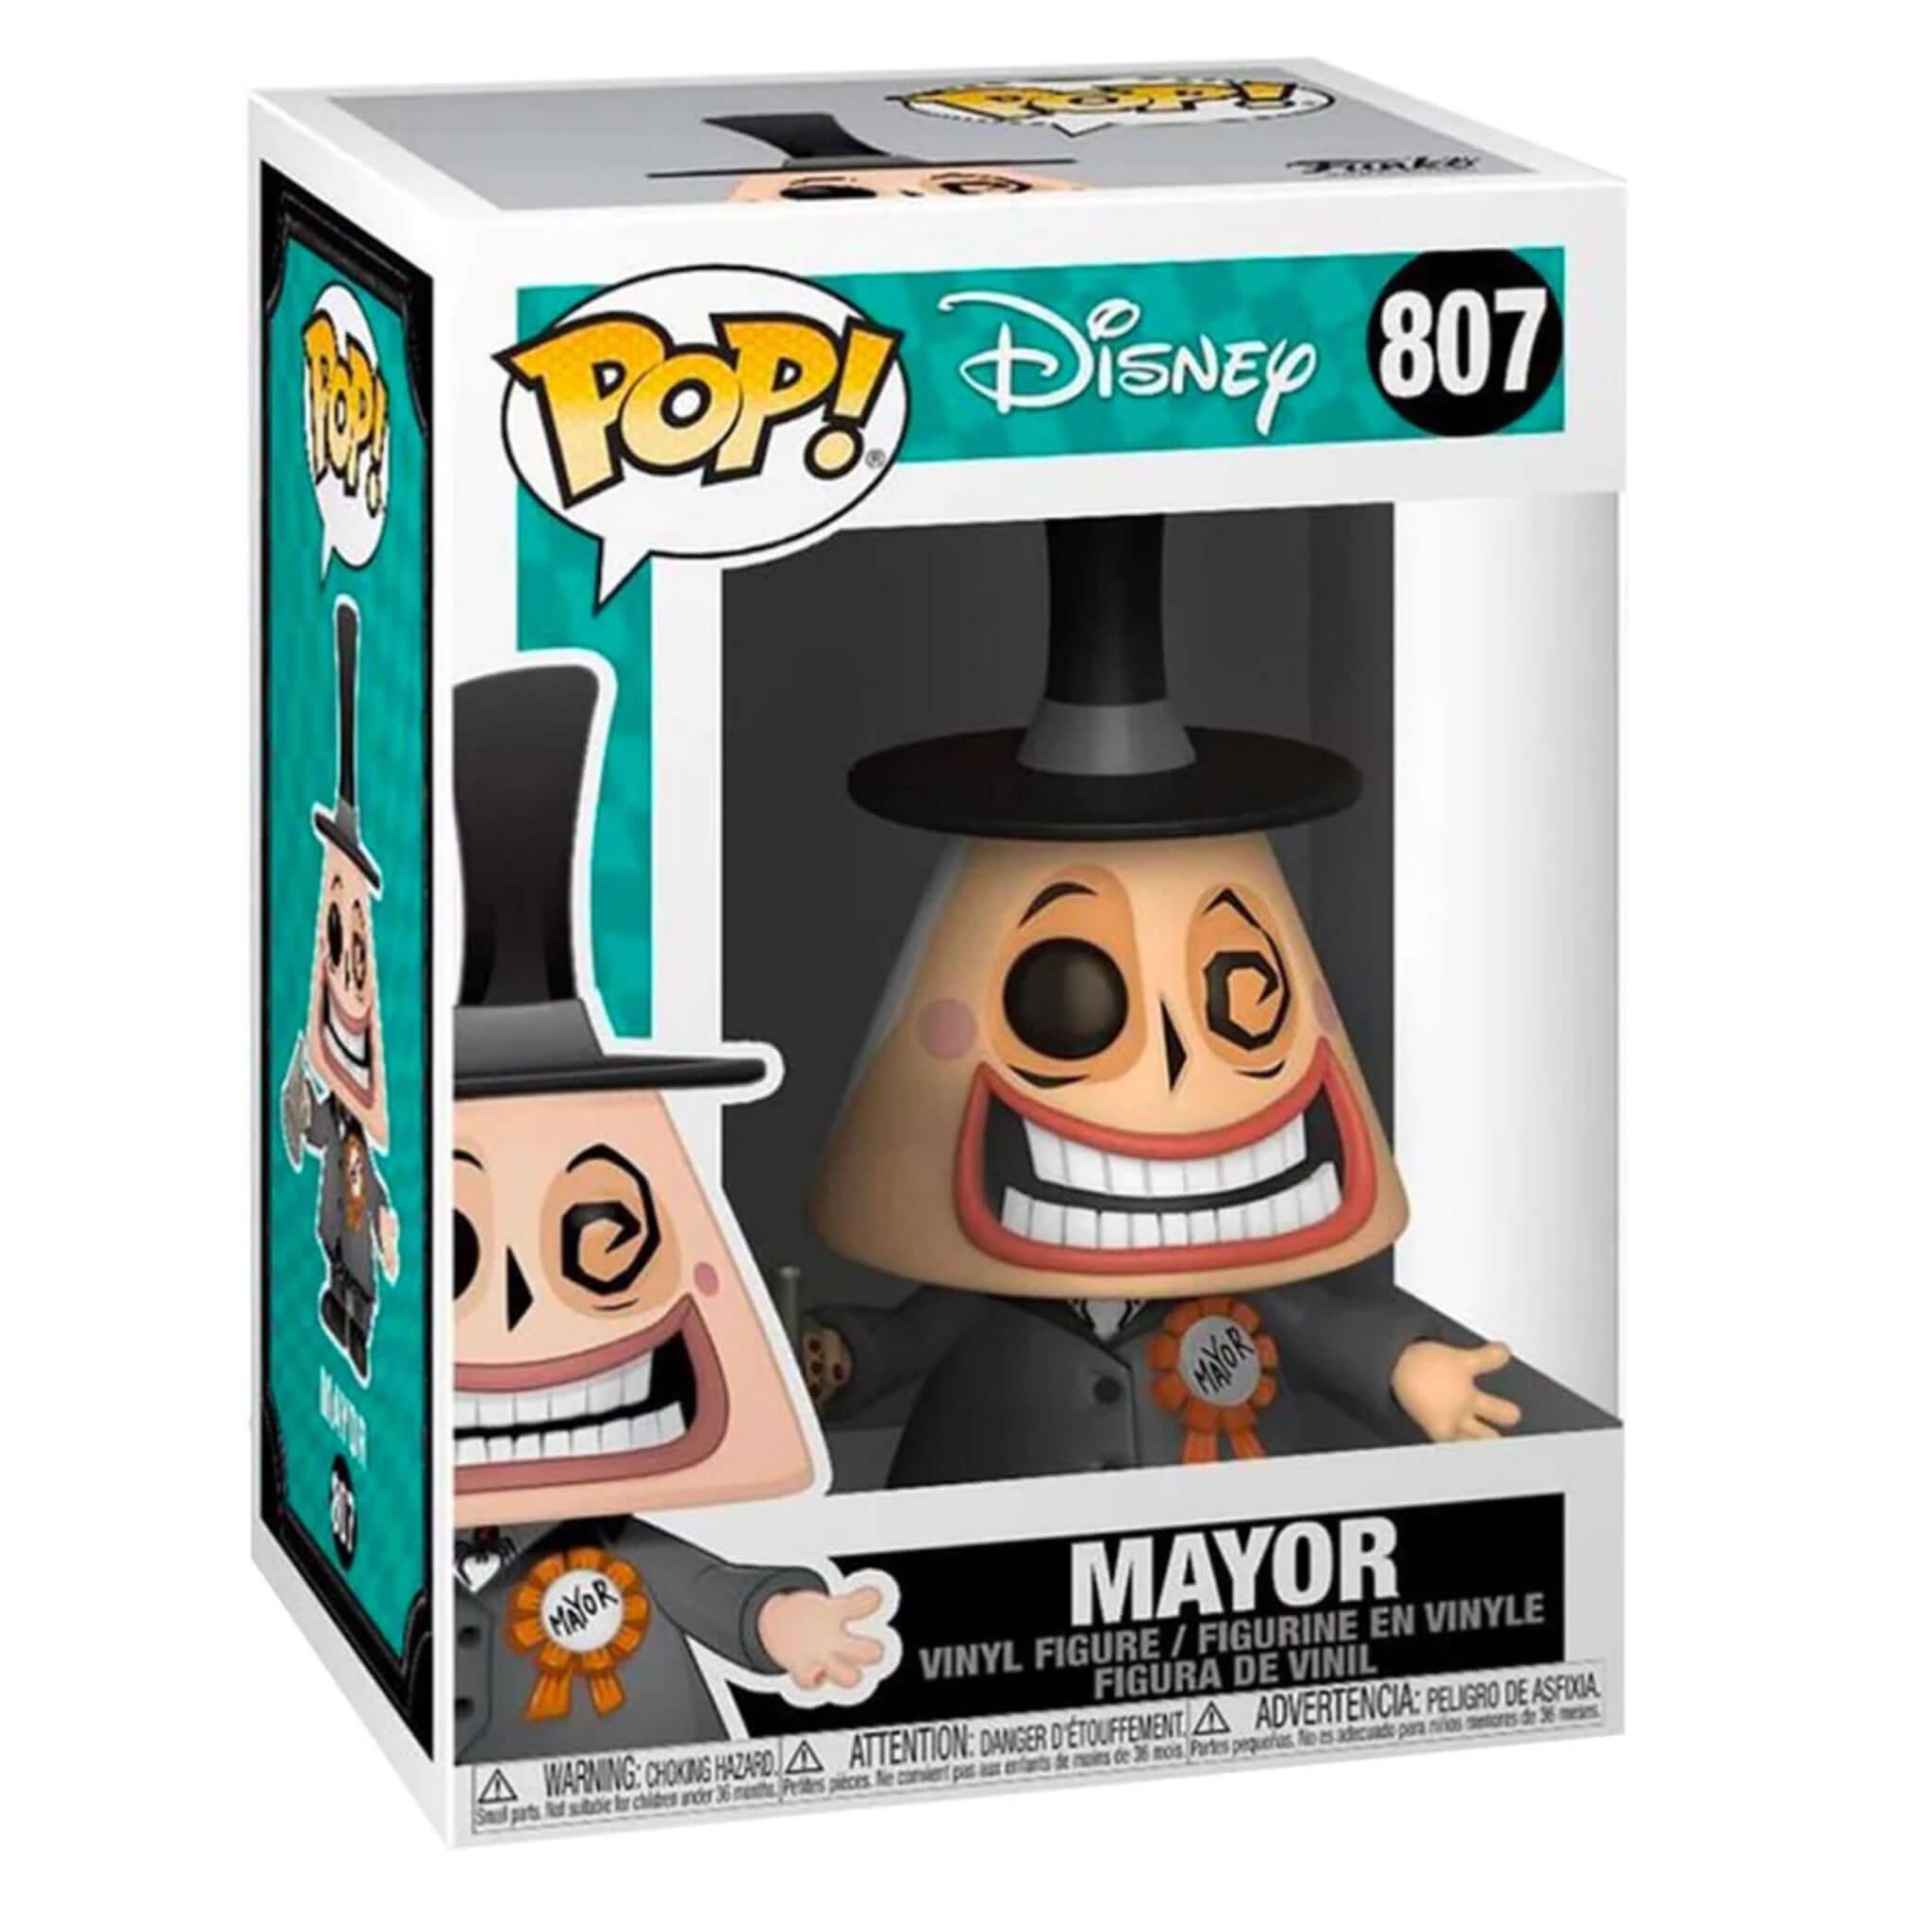 Mayor Funko Pop!-Jingle Truck Toys